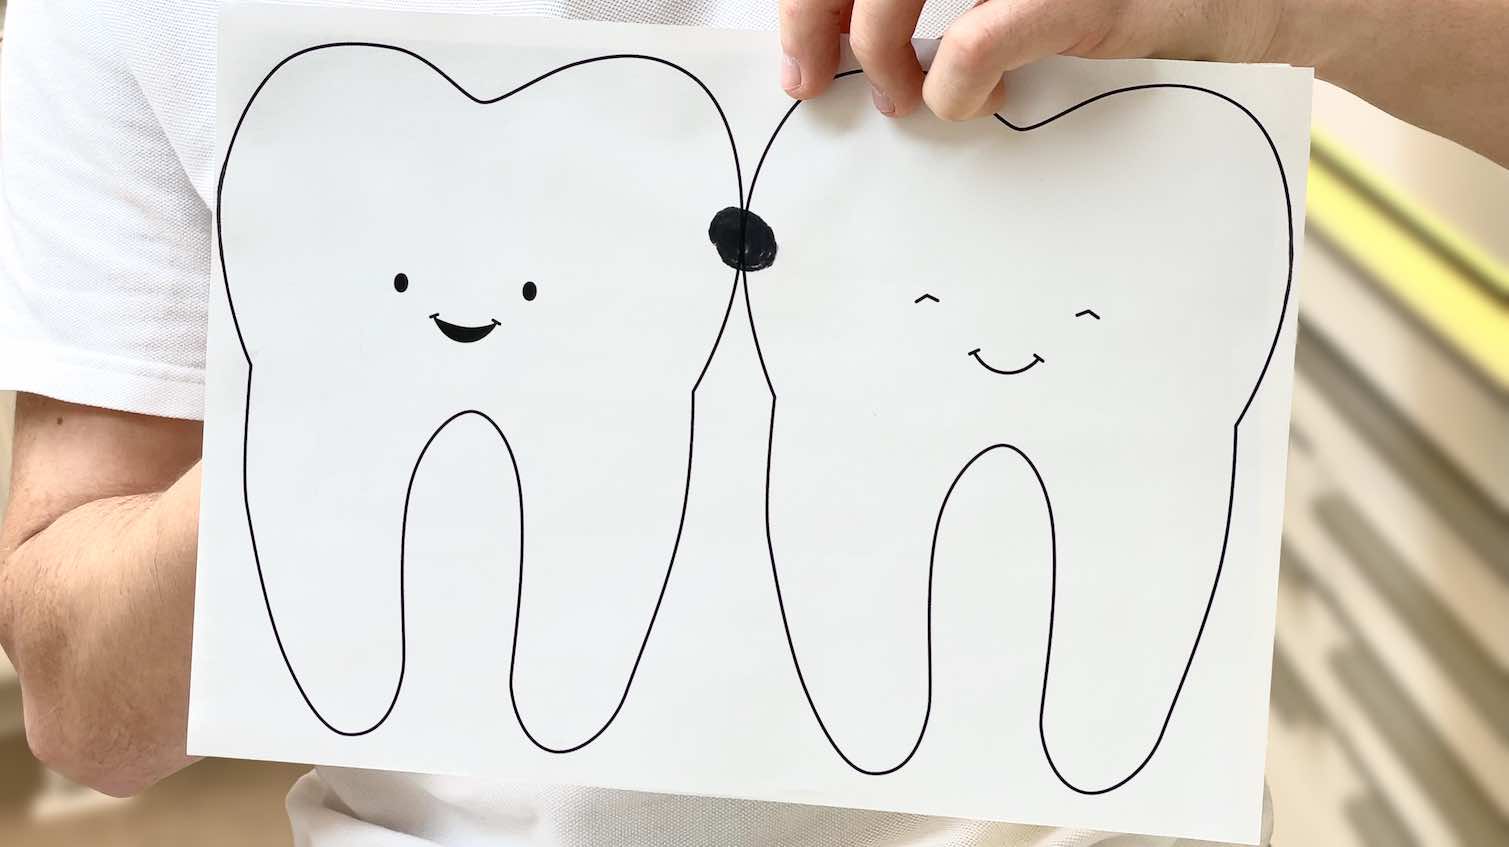 Karies beginnt meist am Kontaktpunkt zwischen den Zähnen